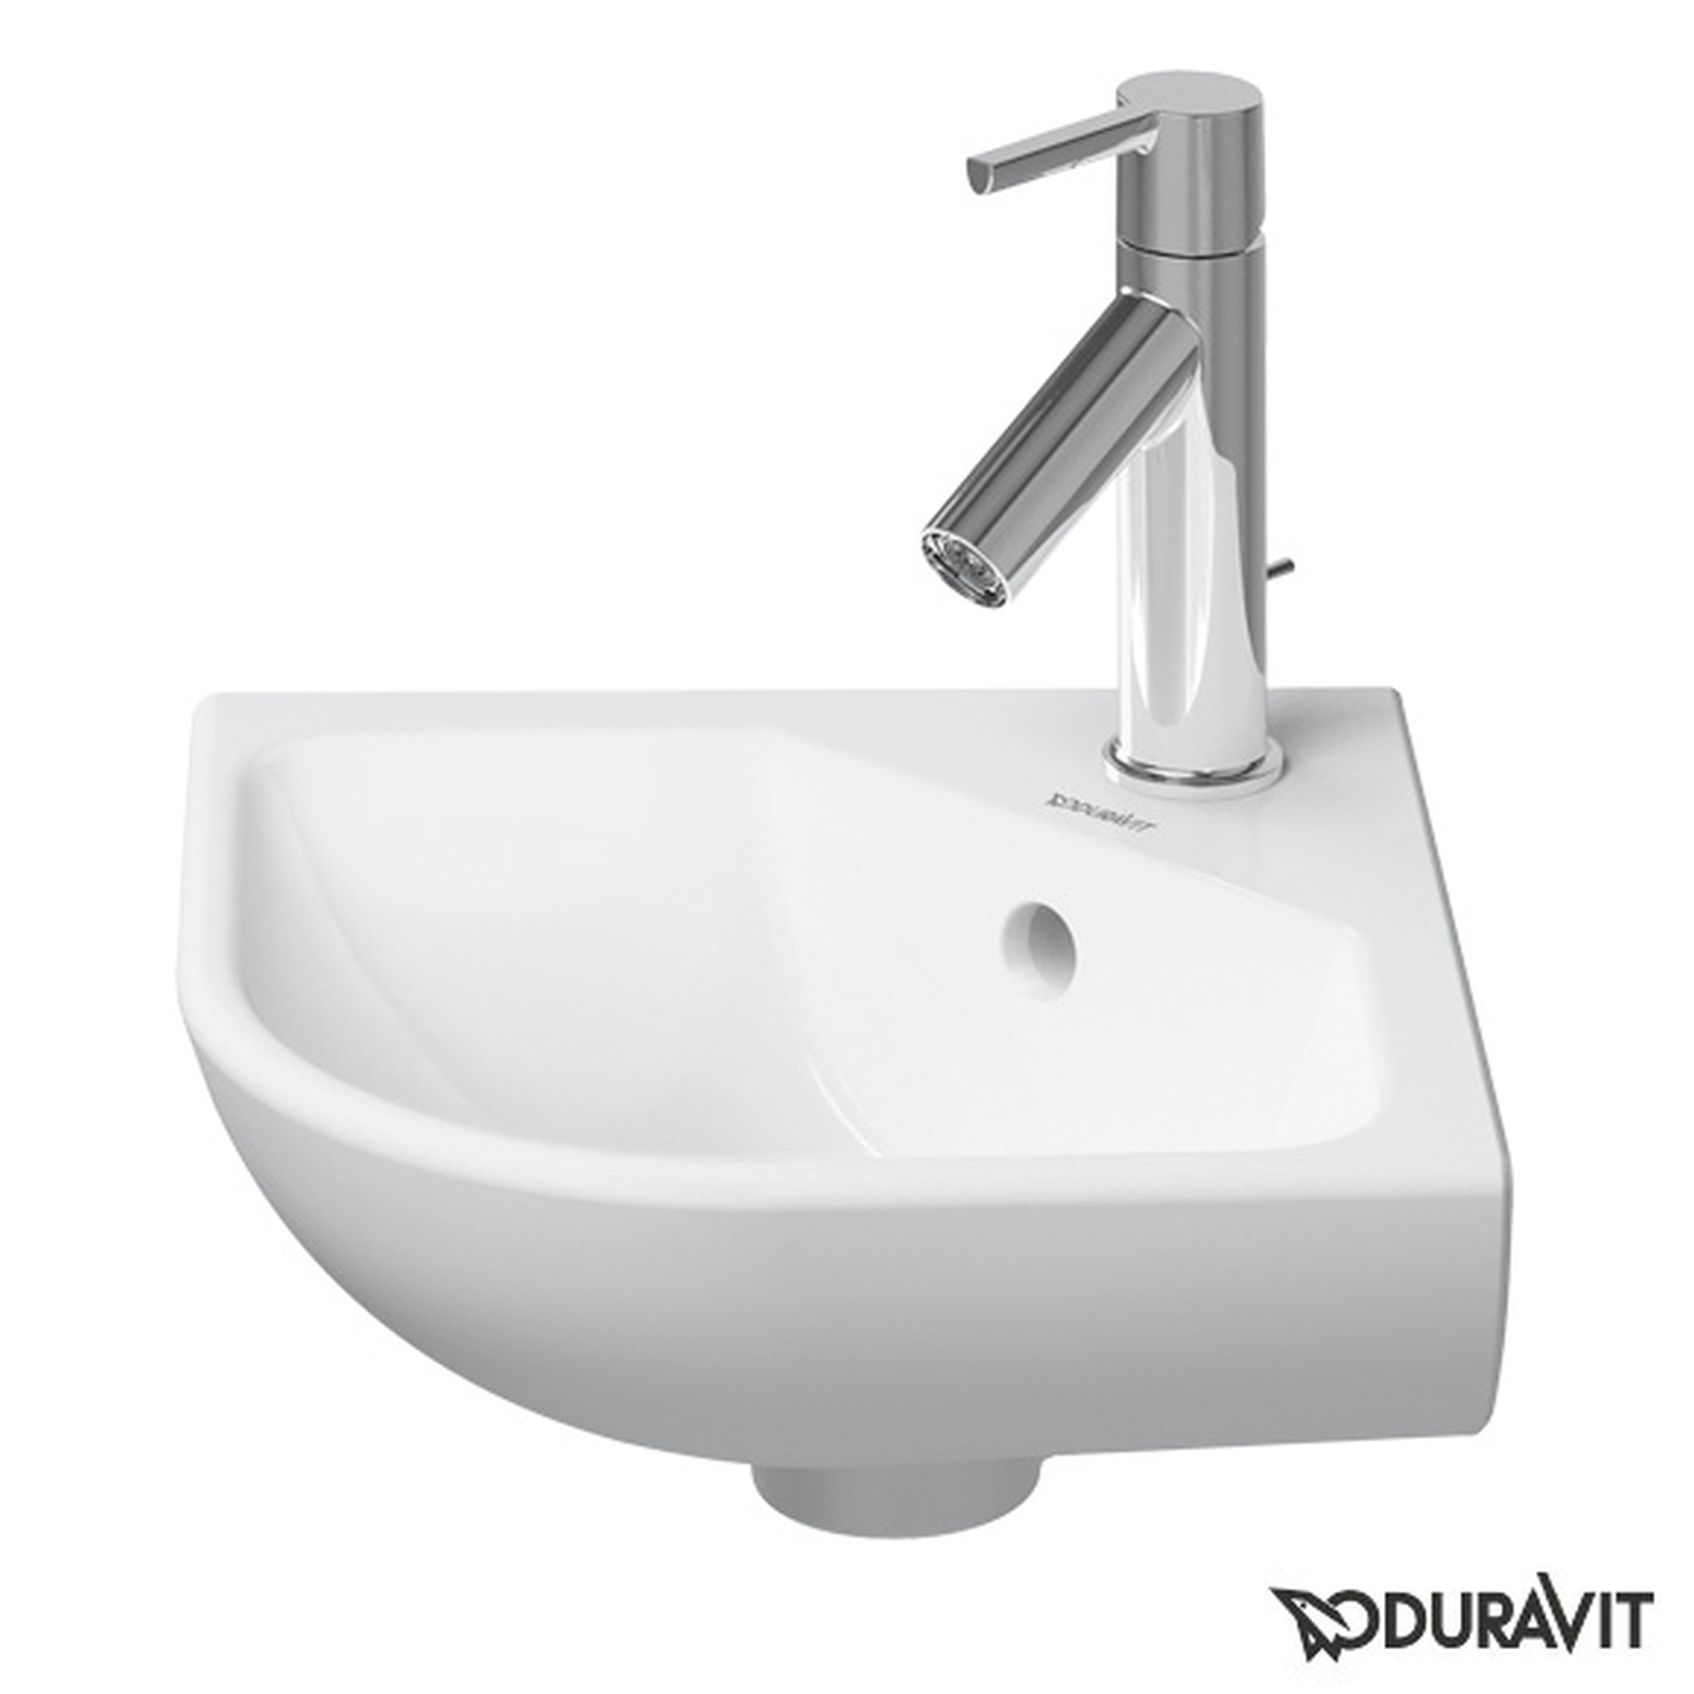 umywalki narożne _ranking – sklep łazienki lazienkarium.pl – najlepsze umywalki narożne – Duravit ME by Starck